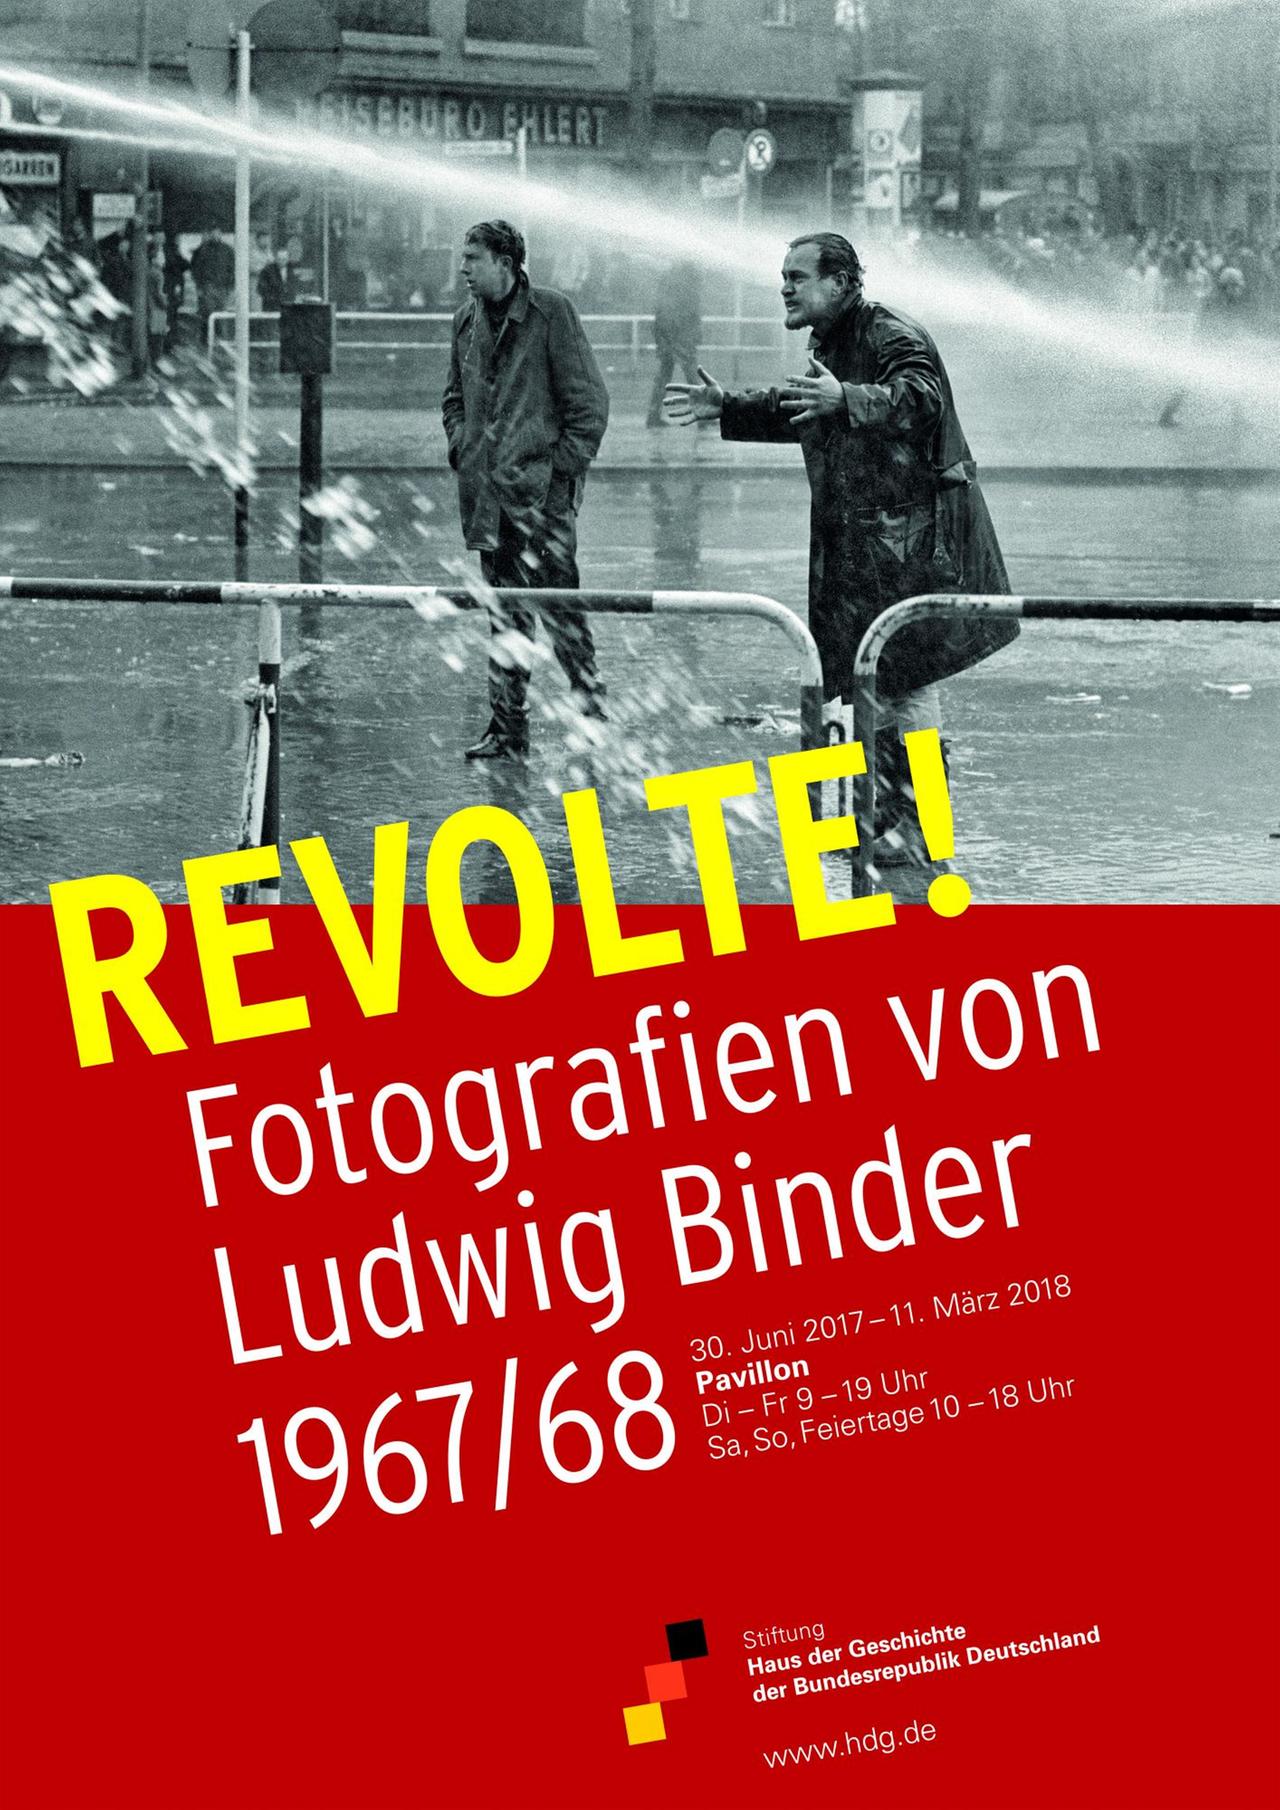 Plakat zur Ausstellung "Revolte! Fotografien von Ludwig Binder 1967/68"